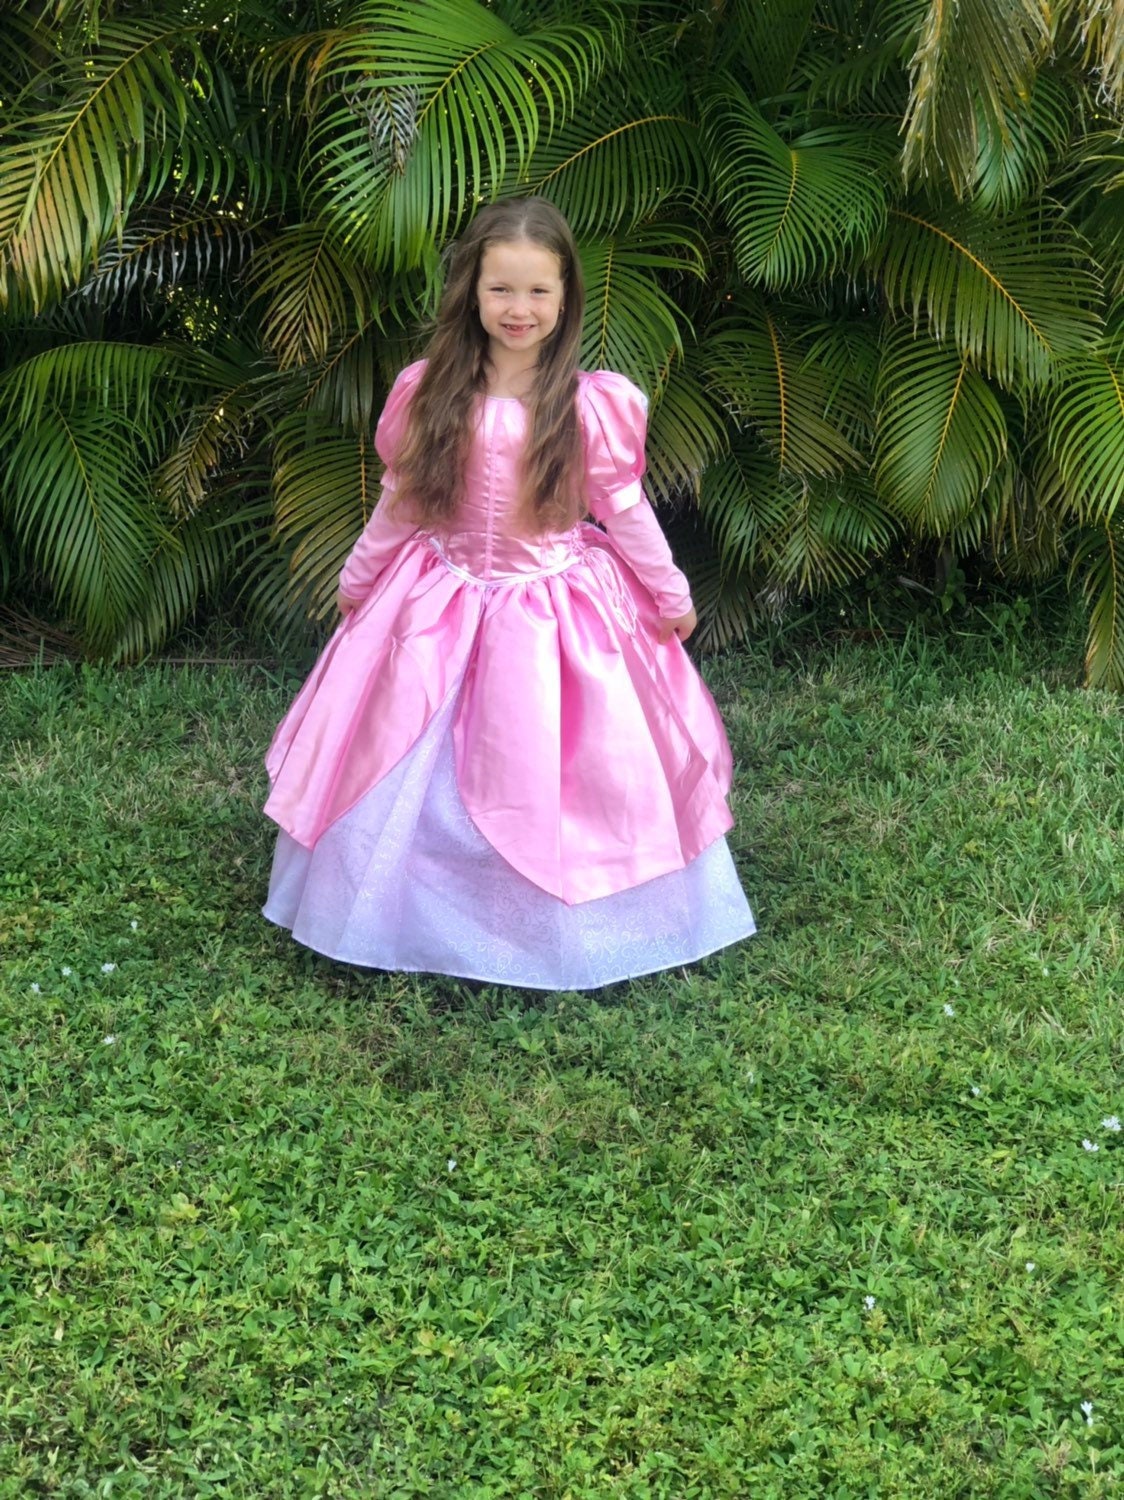 Robe de petite sirène / Disney Princess Ariel inspiré Costume / robe de bal  robe rose style pour tout-petit, enfant, fille princesse Costume -   Canada